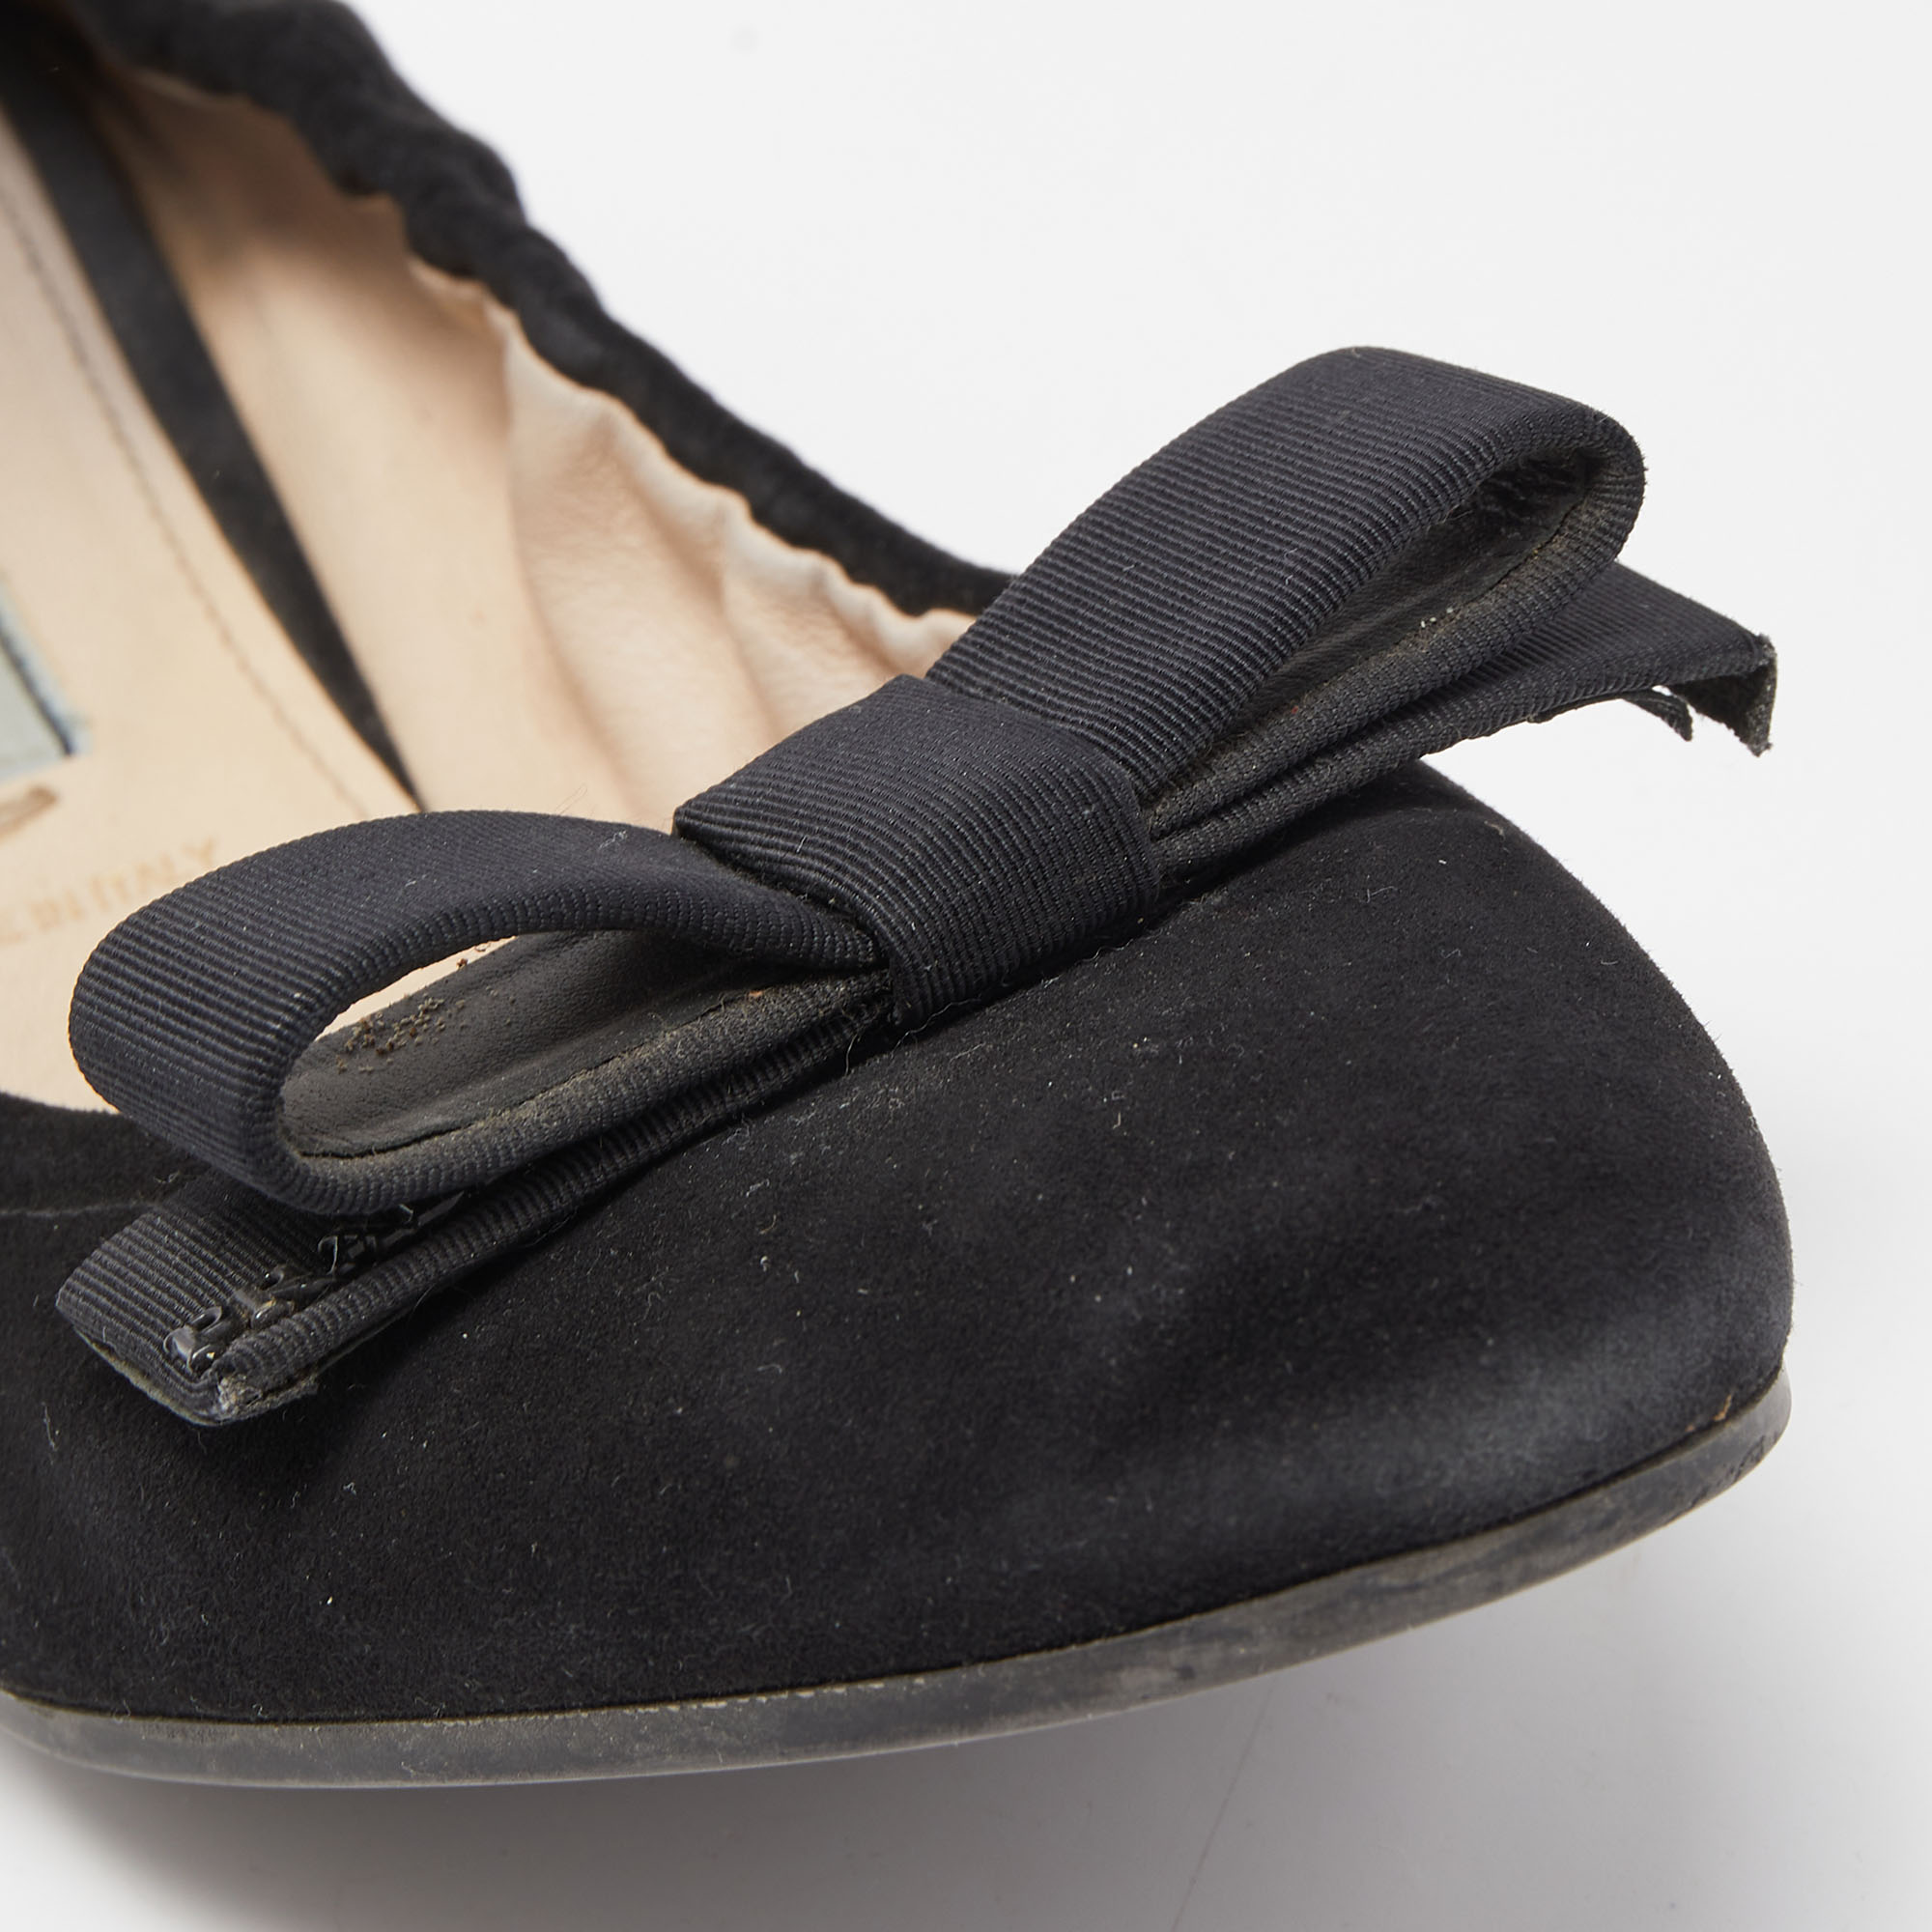 Prada Black Suede Scrunch Ballet Flats Size 39.5